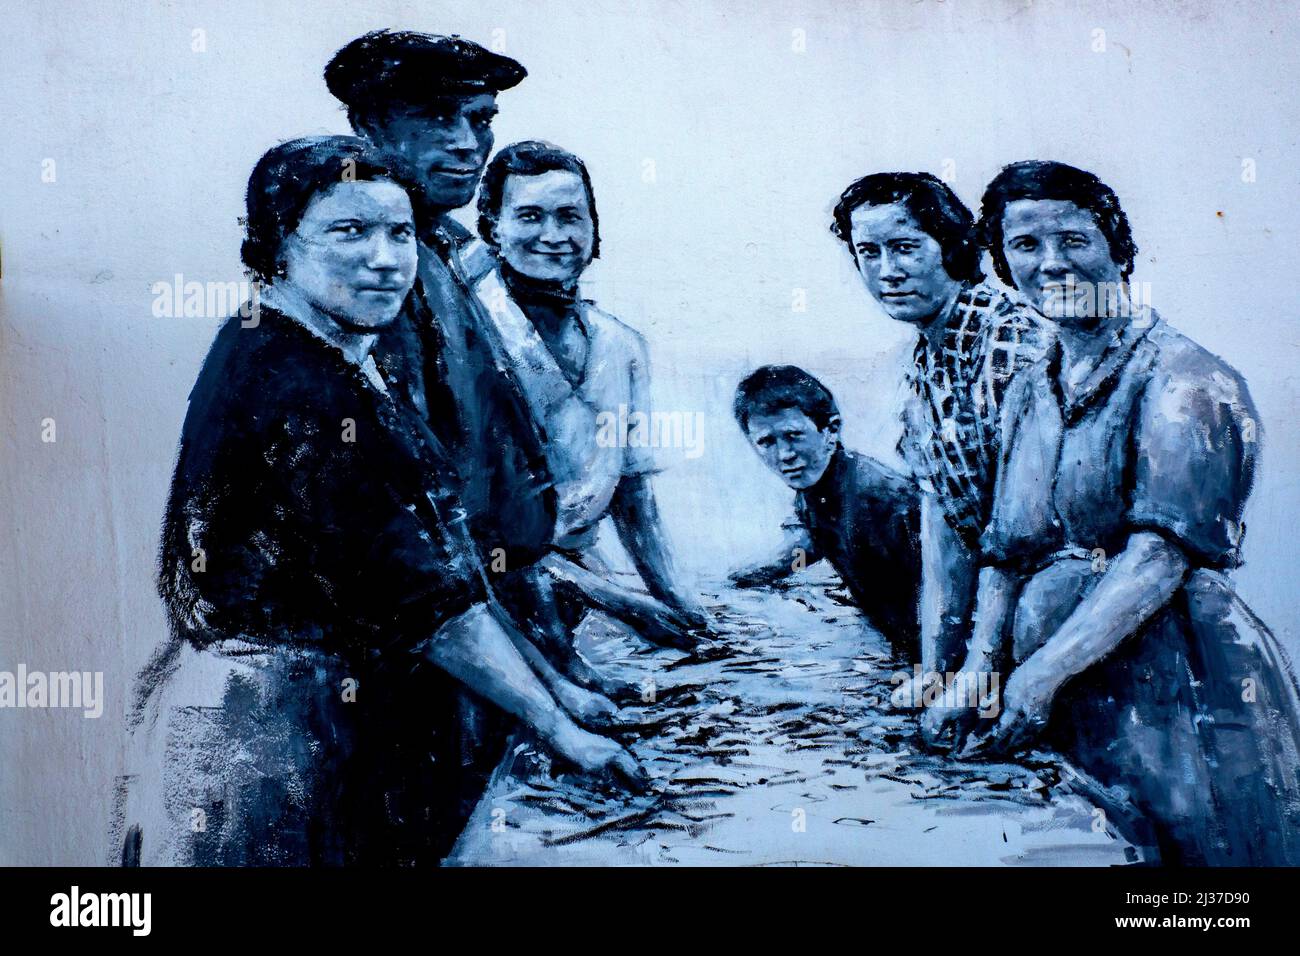 España-País Vasco-Guipúzcoa- ALIMENTOS: Pintura callejera que representa a la familia preparando peces para salados o enlatados, en Guetarria. Foto de stock